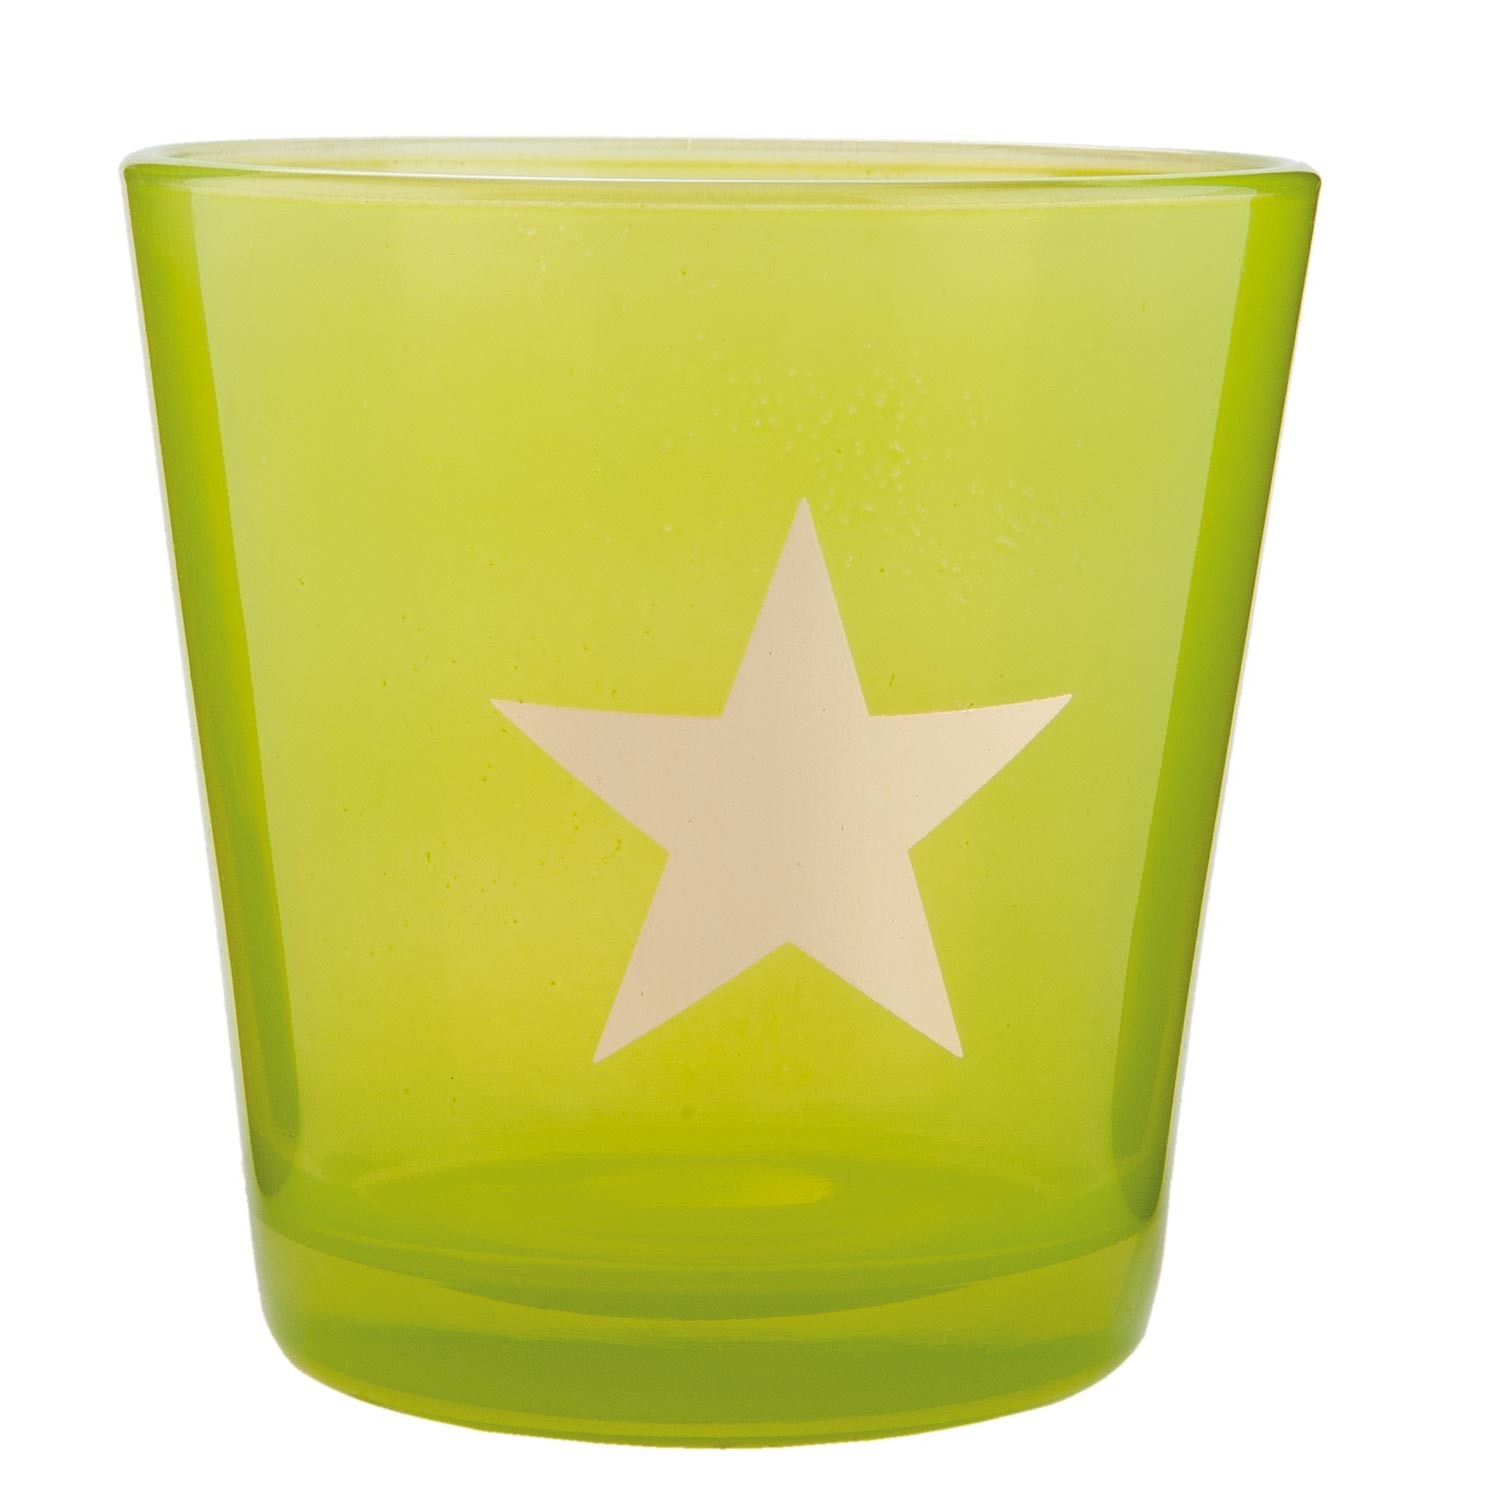 Zelený svícen na čajovou svíčku s hvězdou - Ø 10*10 cm   Clayre & Eef